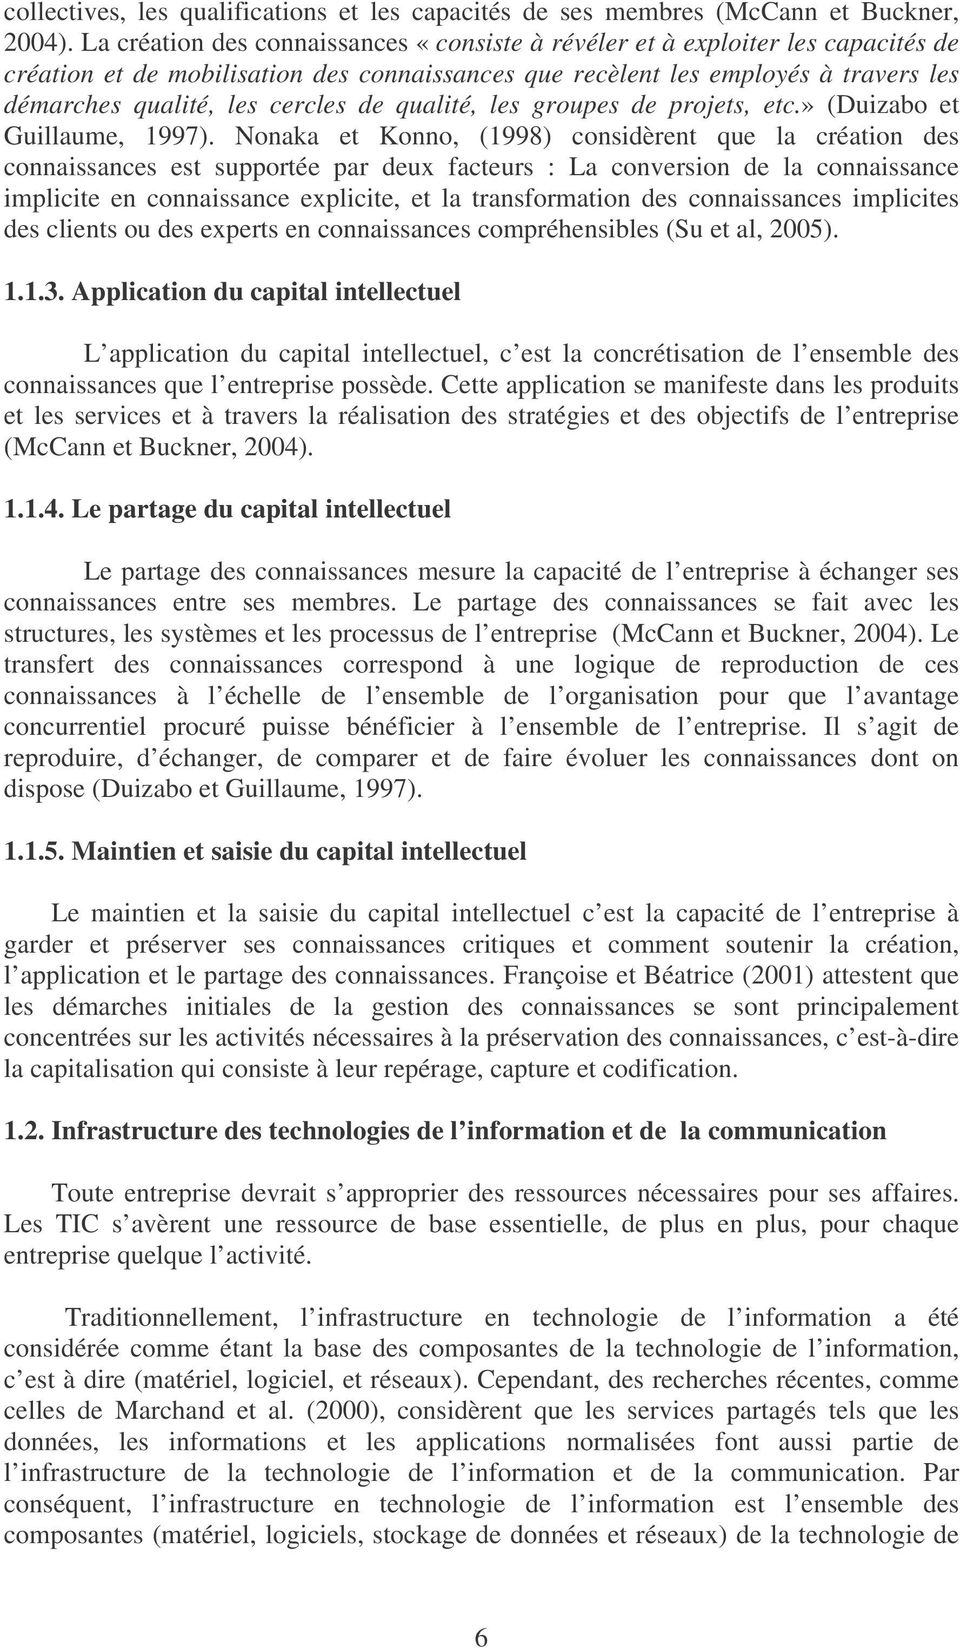 de qualité, les groupes de projets, etc.» (Duizabo et Guillaume, 1997).